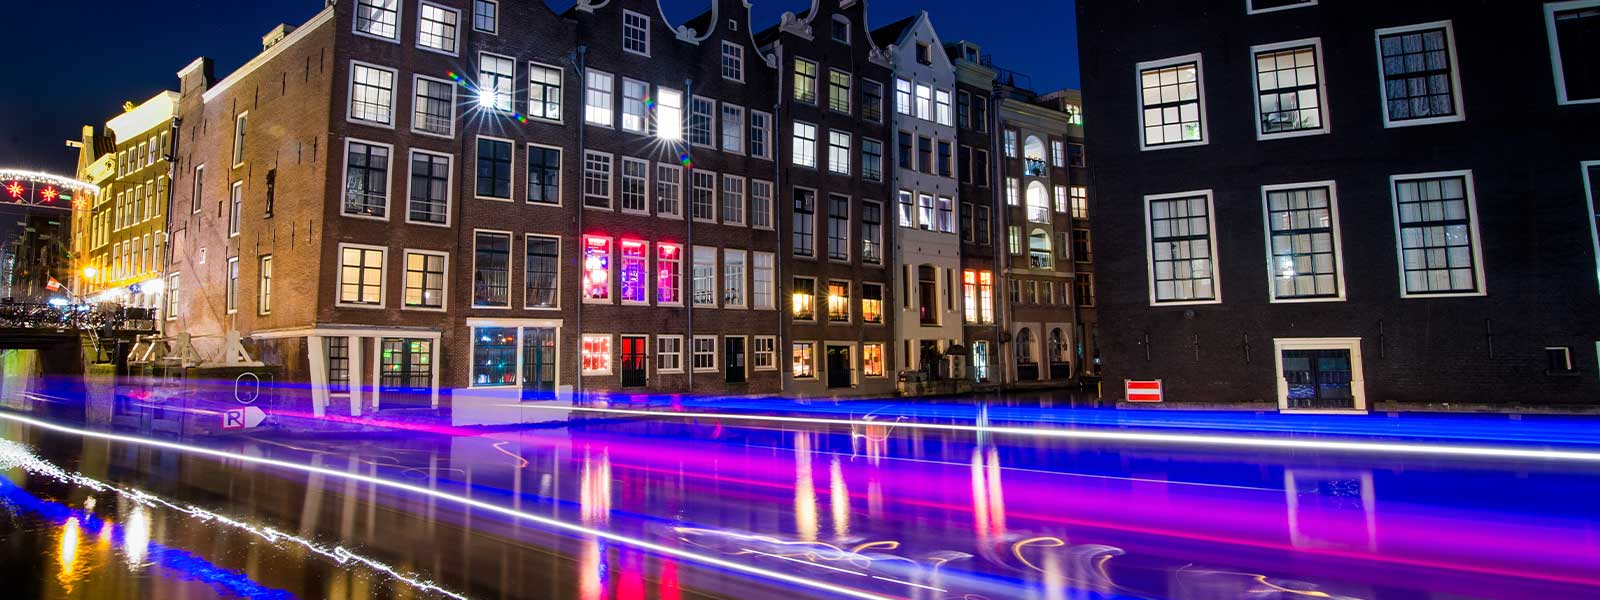 Genieten van de lichtjes in Amsterdam vanaf de gracht